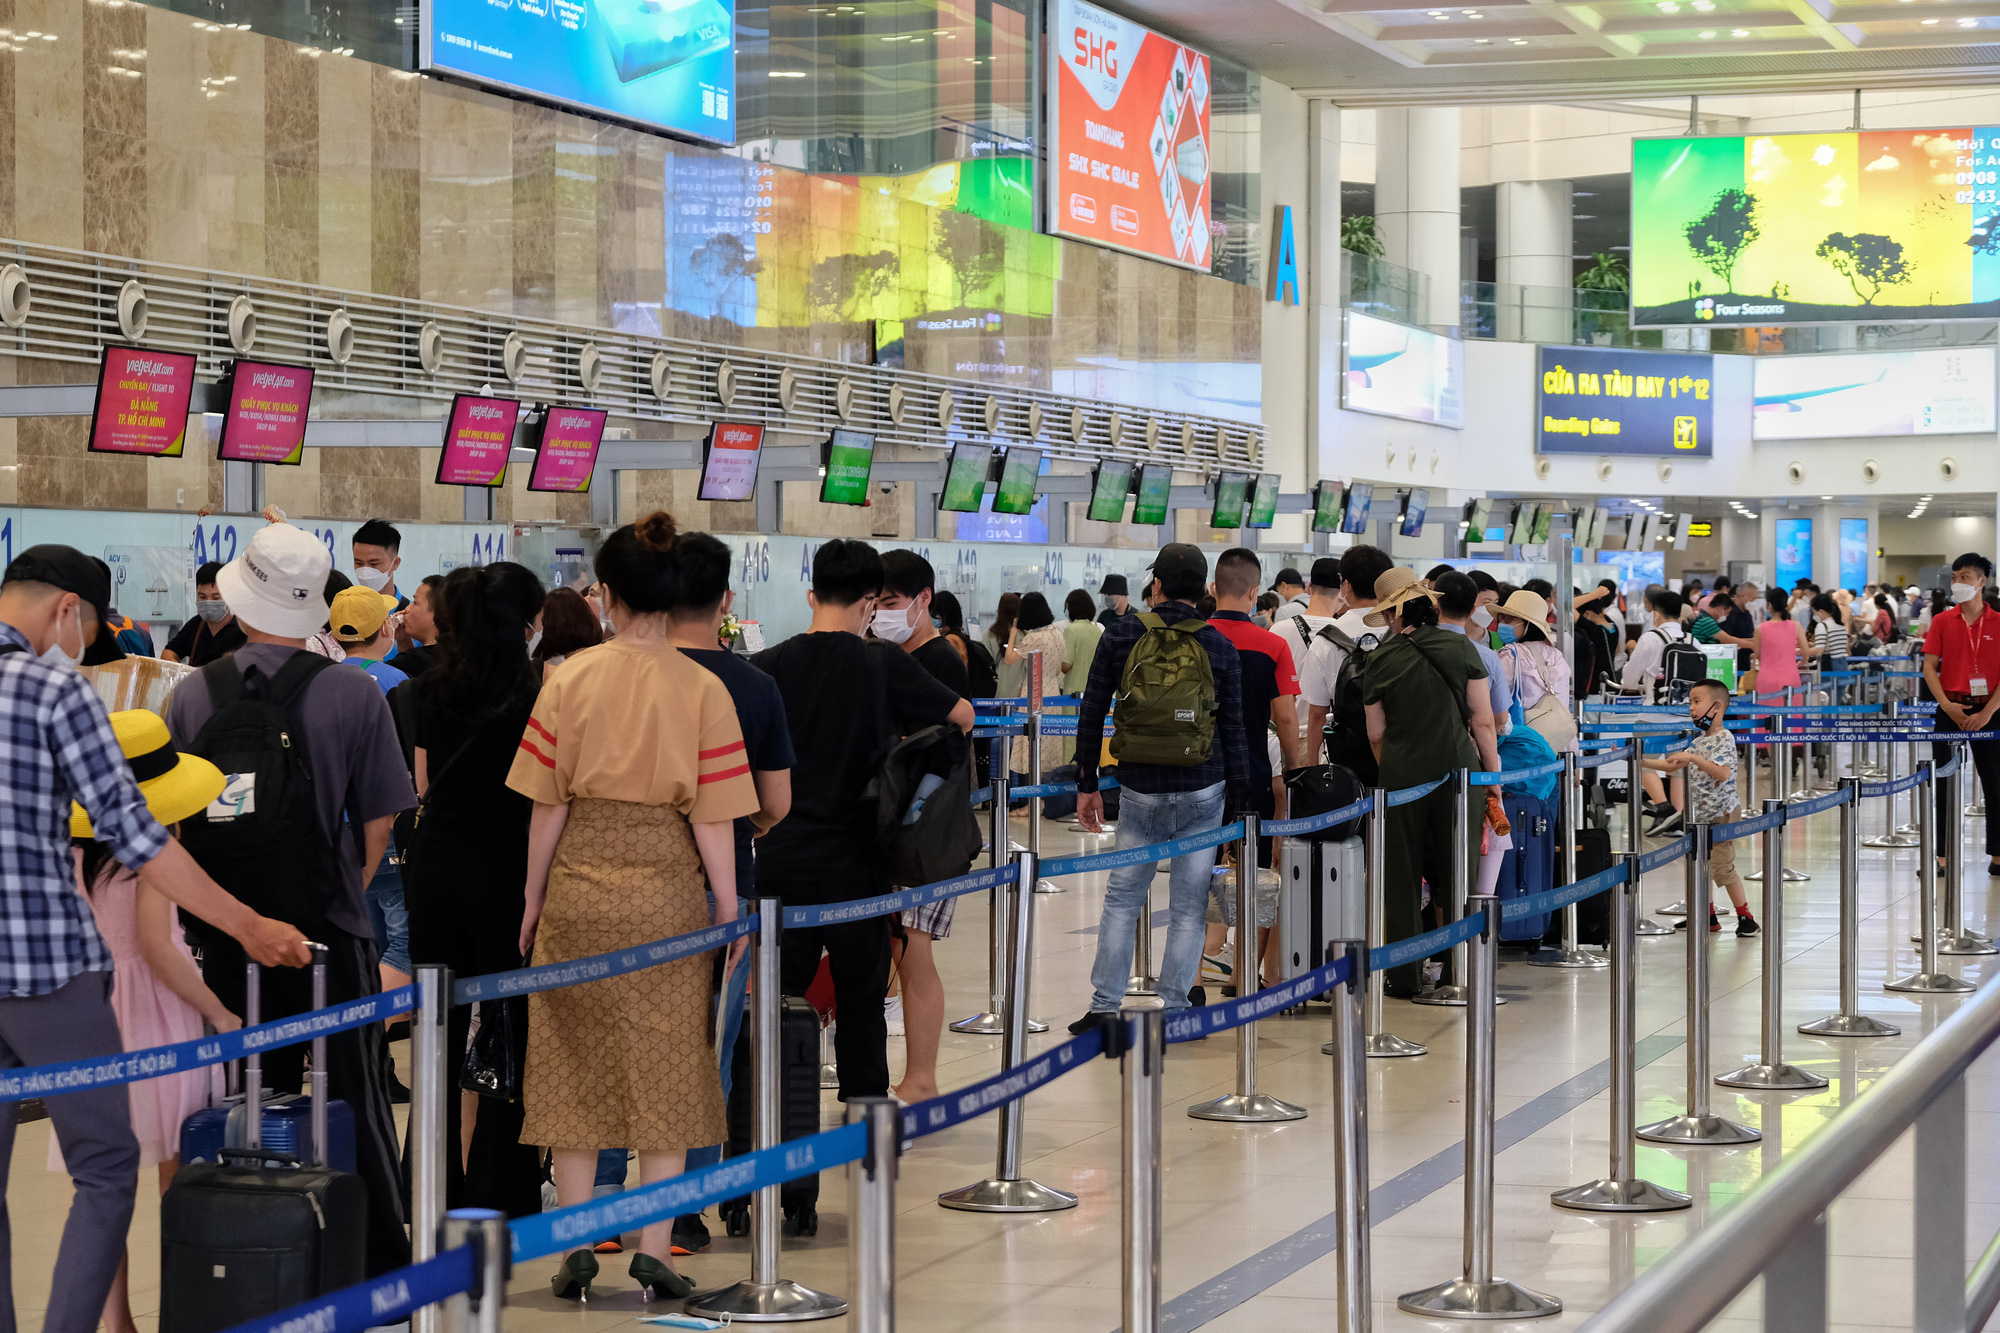 Sân bay Nội Bài đông đúc trước ngày nghỉ lễ, người người nhà nhà đi lu lịch sau tròn 1 năm làn sóng dịch lần thứ 4 - Ảnh 4.